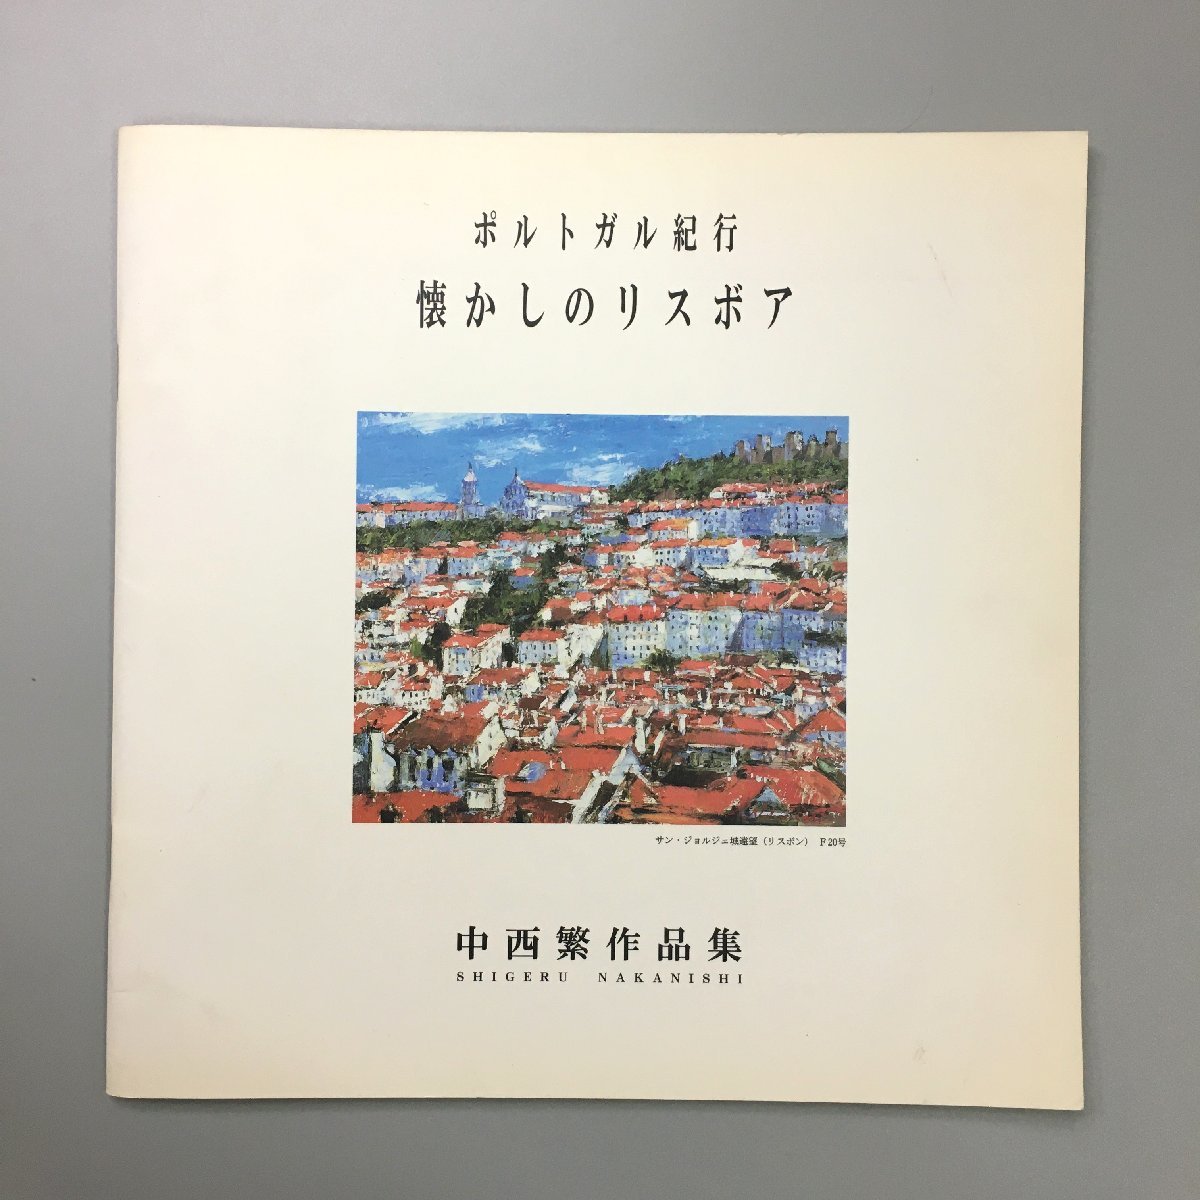 हस्ताक्षरित शिगेरु नाकानिशी कला संग्रह: पुर्तगाल में यात्रा: उदासीन लिस्बोआ हस्ताक्षरित कला संग्रह, चित्रकारी, कला पुस्तक, संग्रह, कला पुस्तक